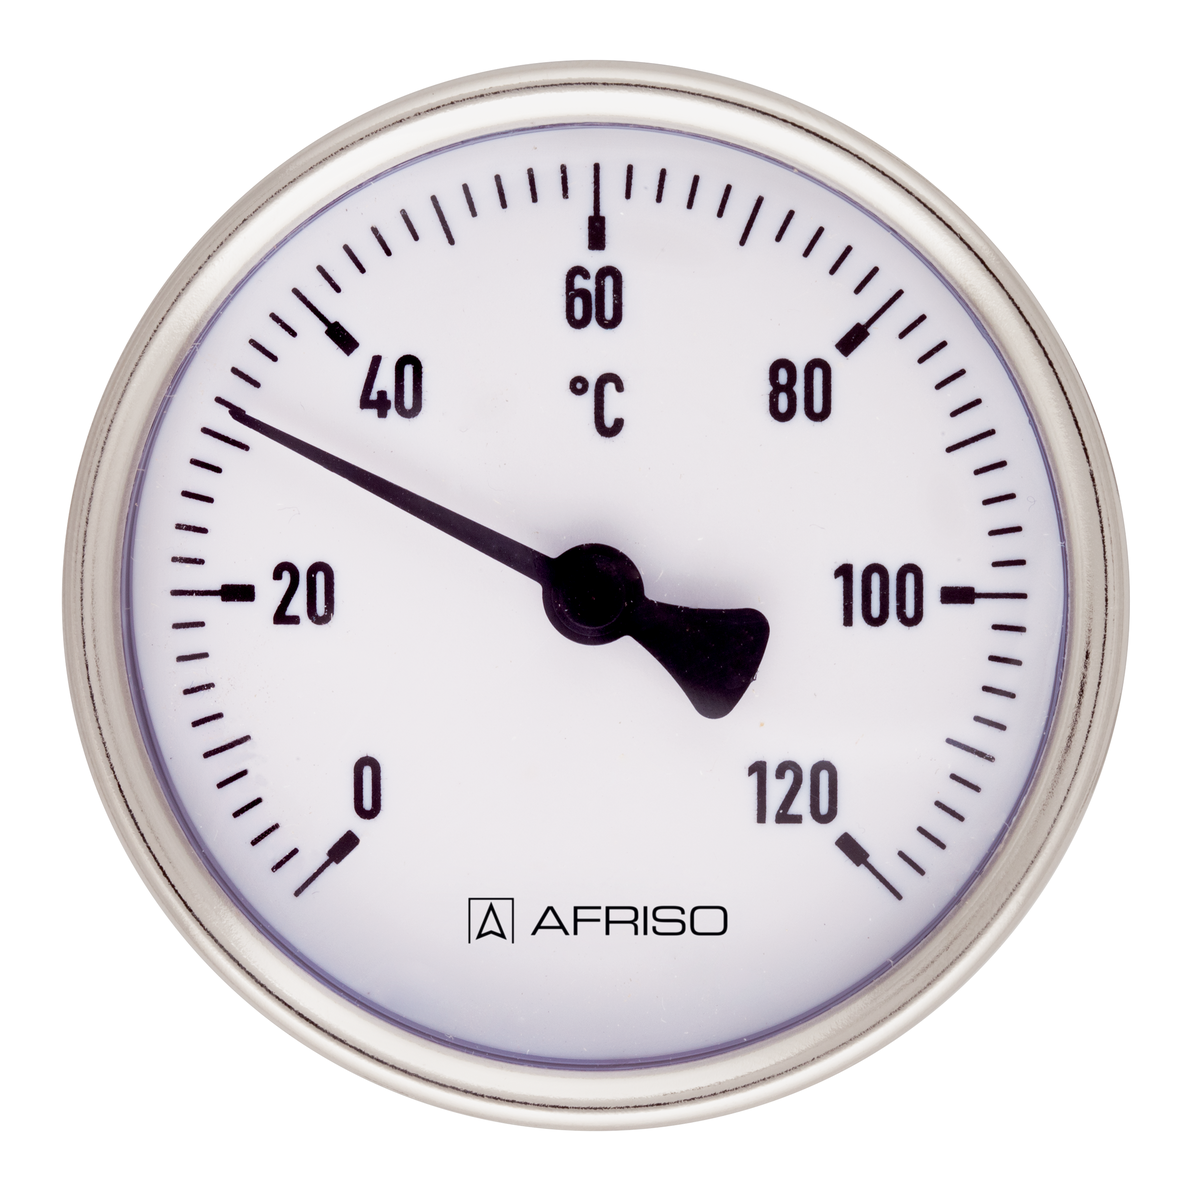 Bimetalový teploměr BiTh 80 ST, Ø 80 mm, -20 ÷ 60 °C, délka jímky 63 mm, G½", axiální - AFRISO.CZ